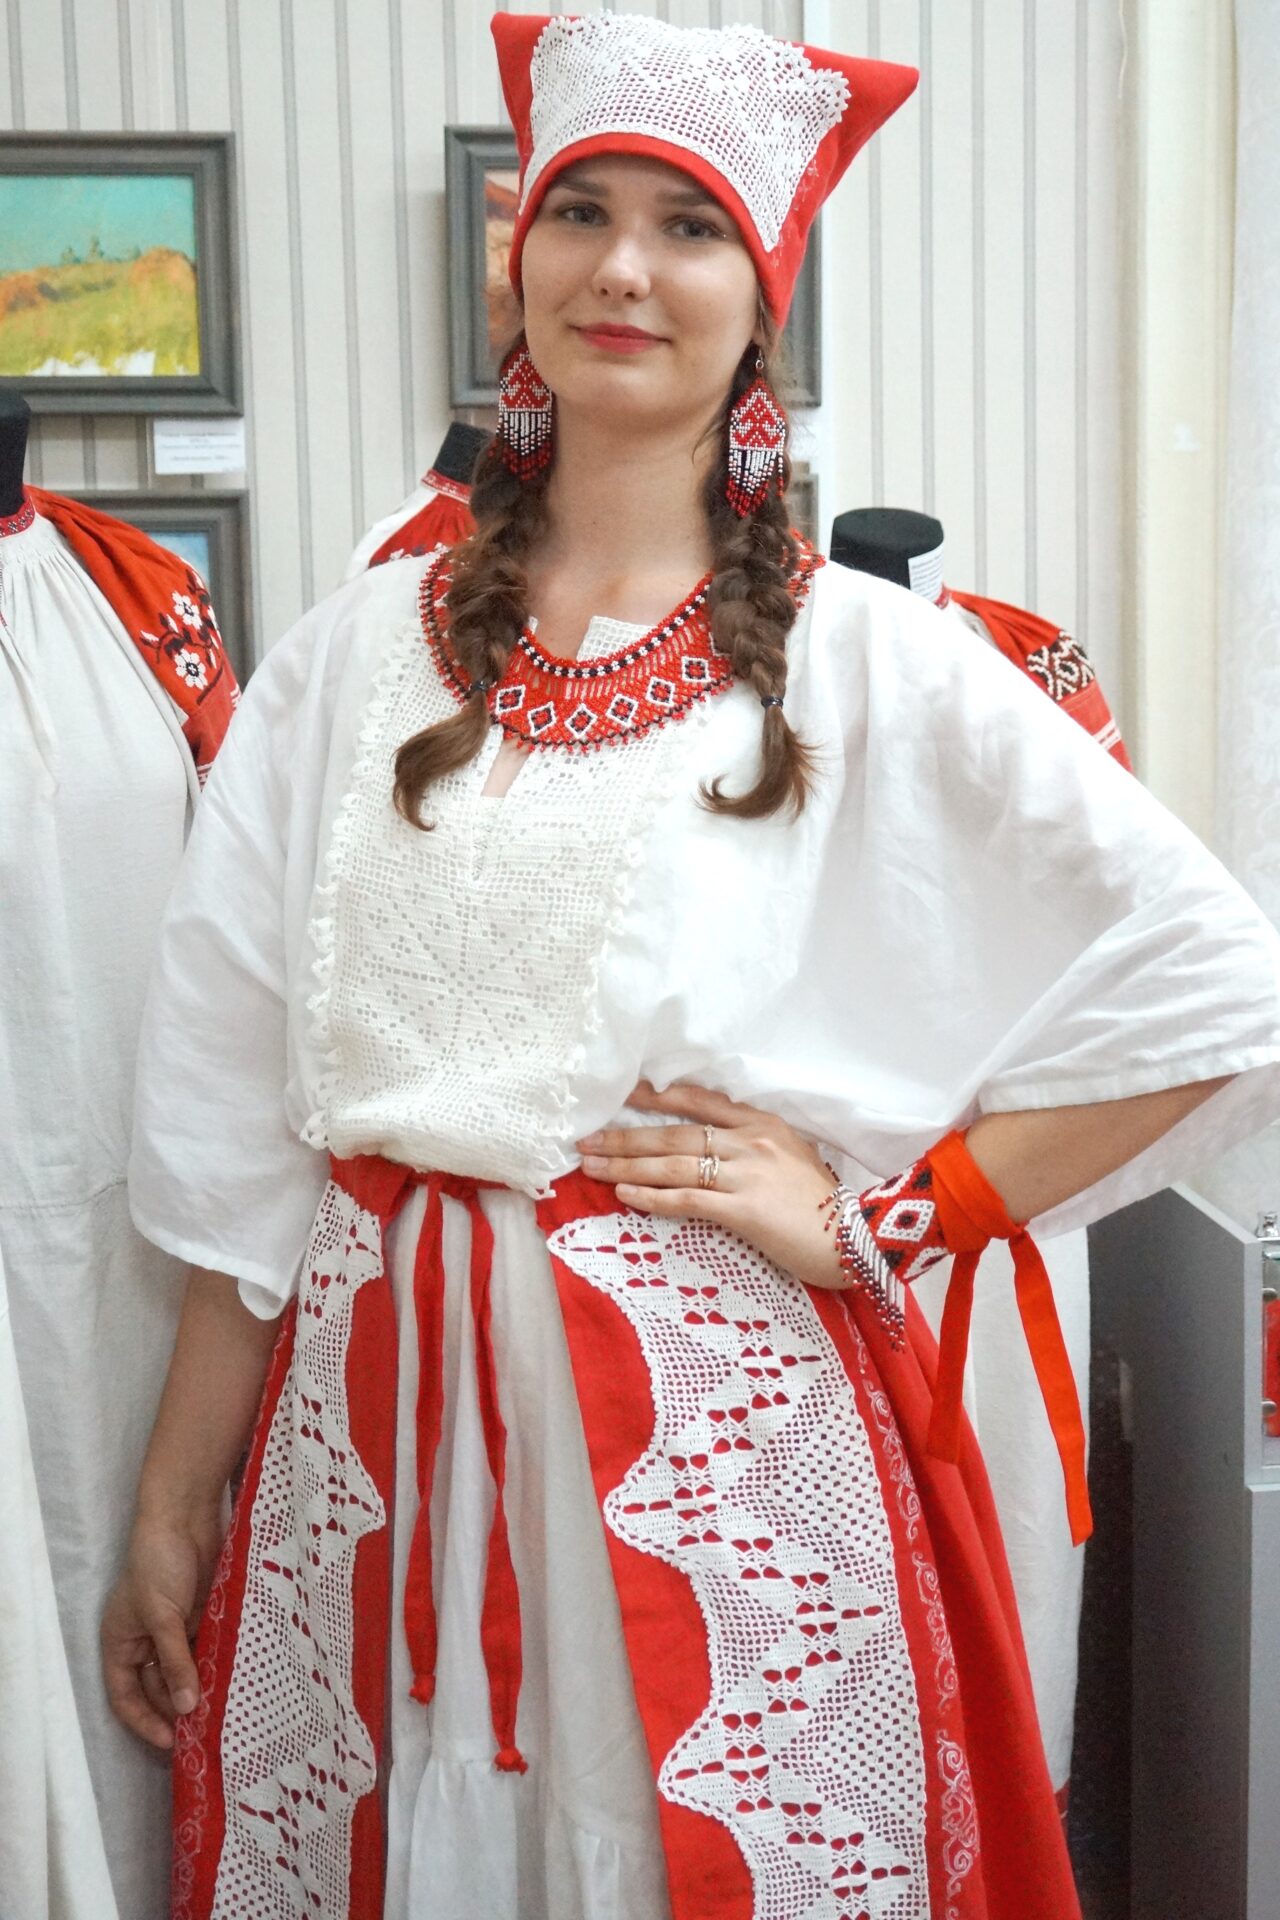 Аутентичные наряды и украшения показали на межрегиональном фестивале-конкурсе в Рязани  